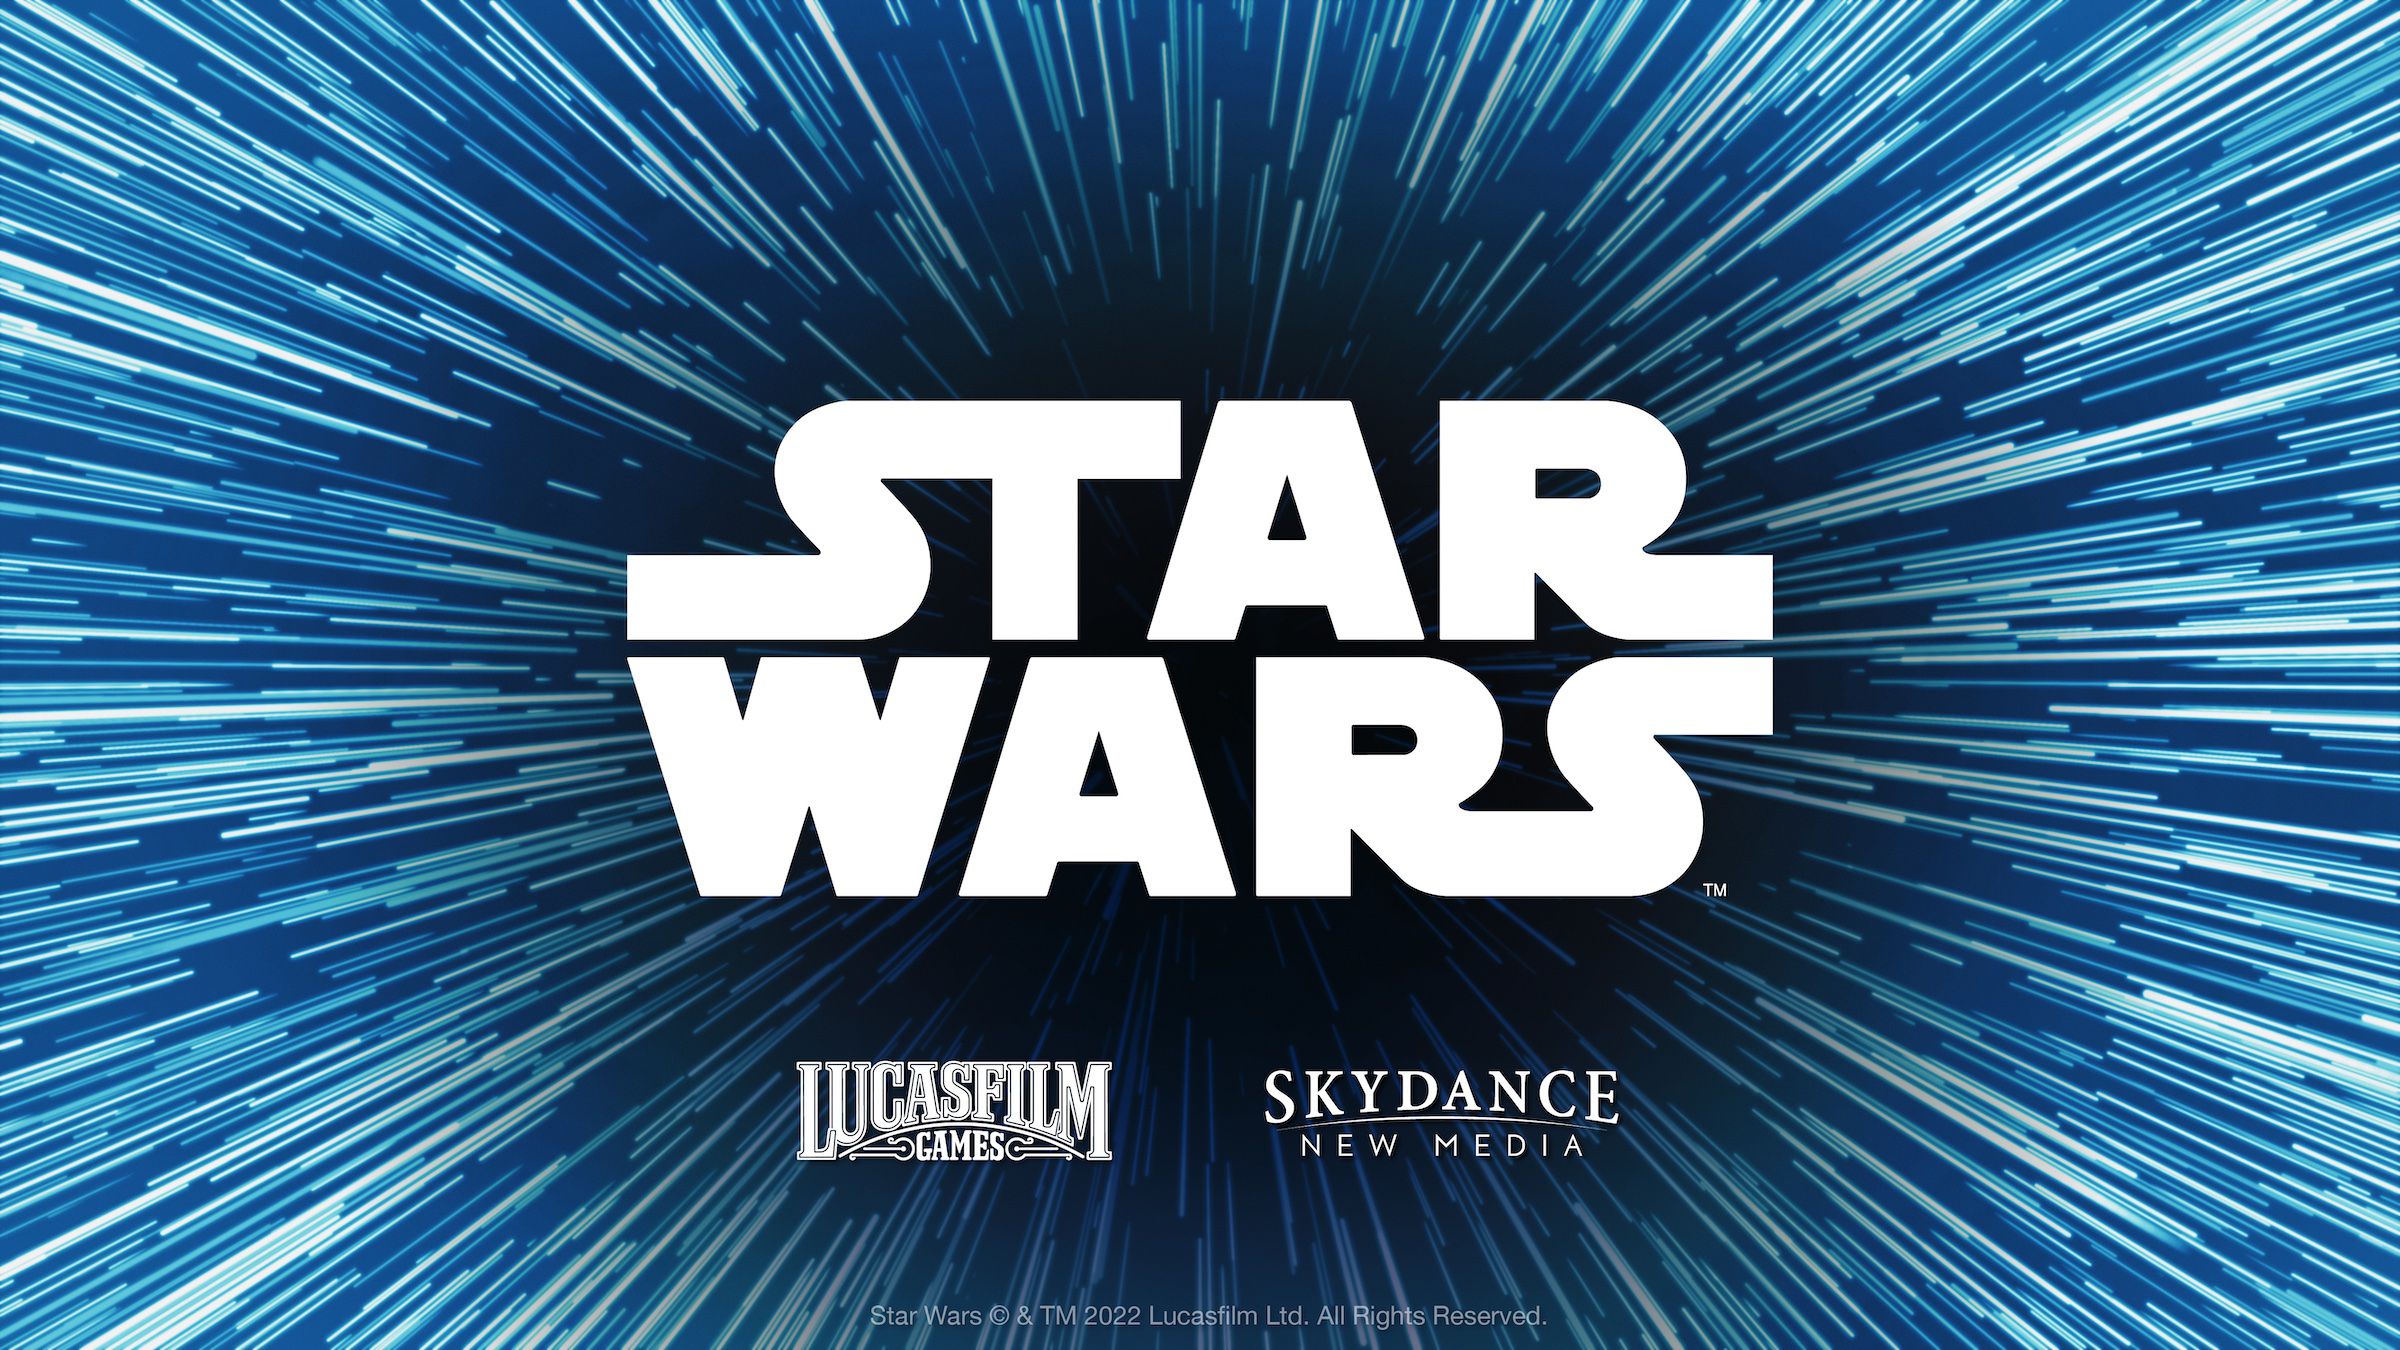 Imagen para Skydance New Media, el estudio de Amy Hennig, trabaja en un nuevo juego de Star Wars